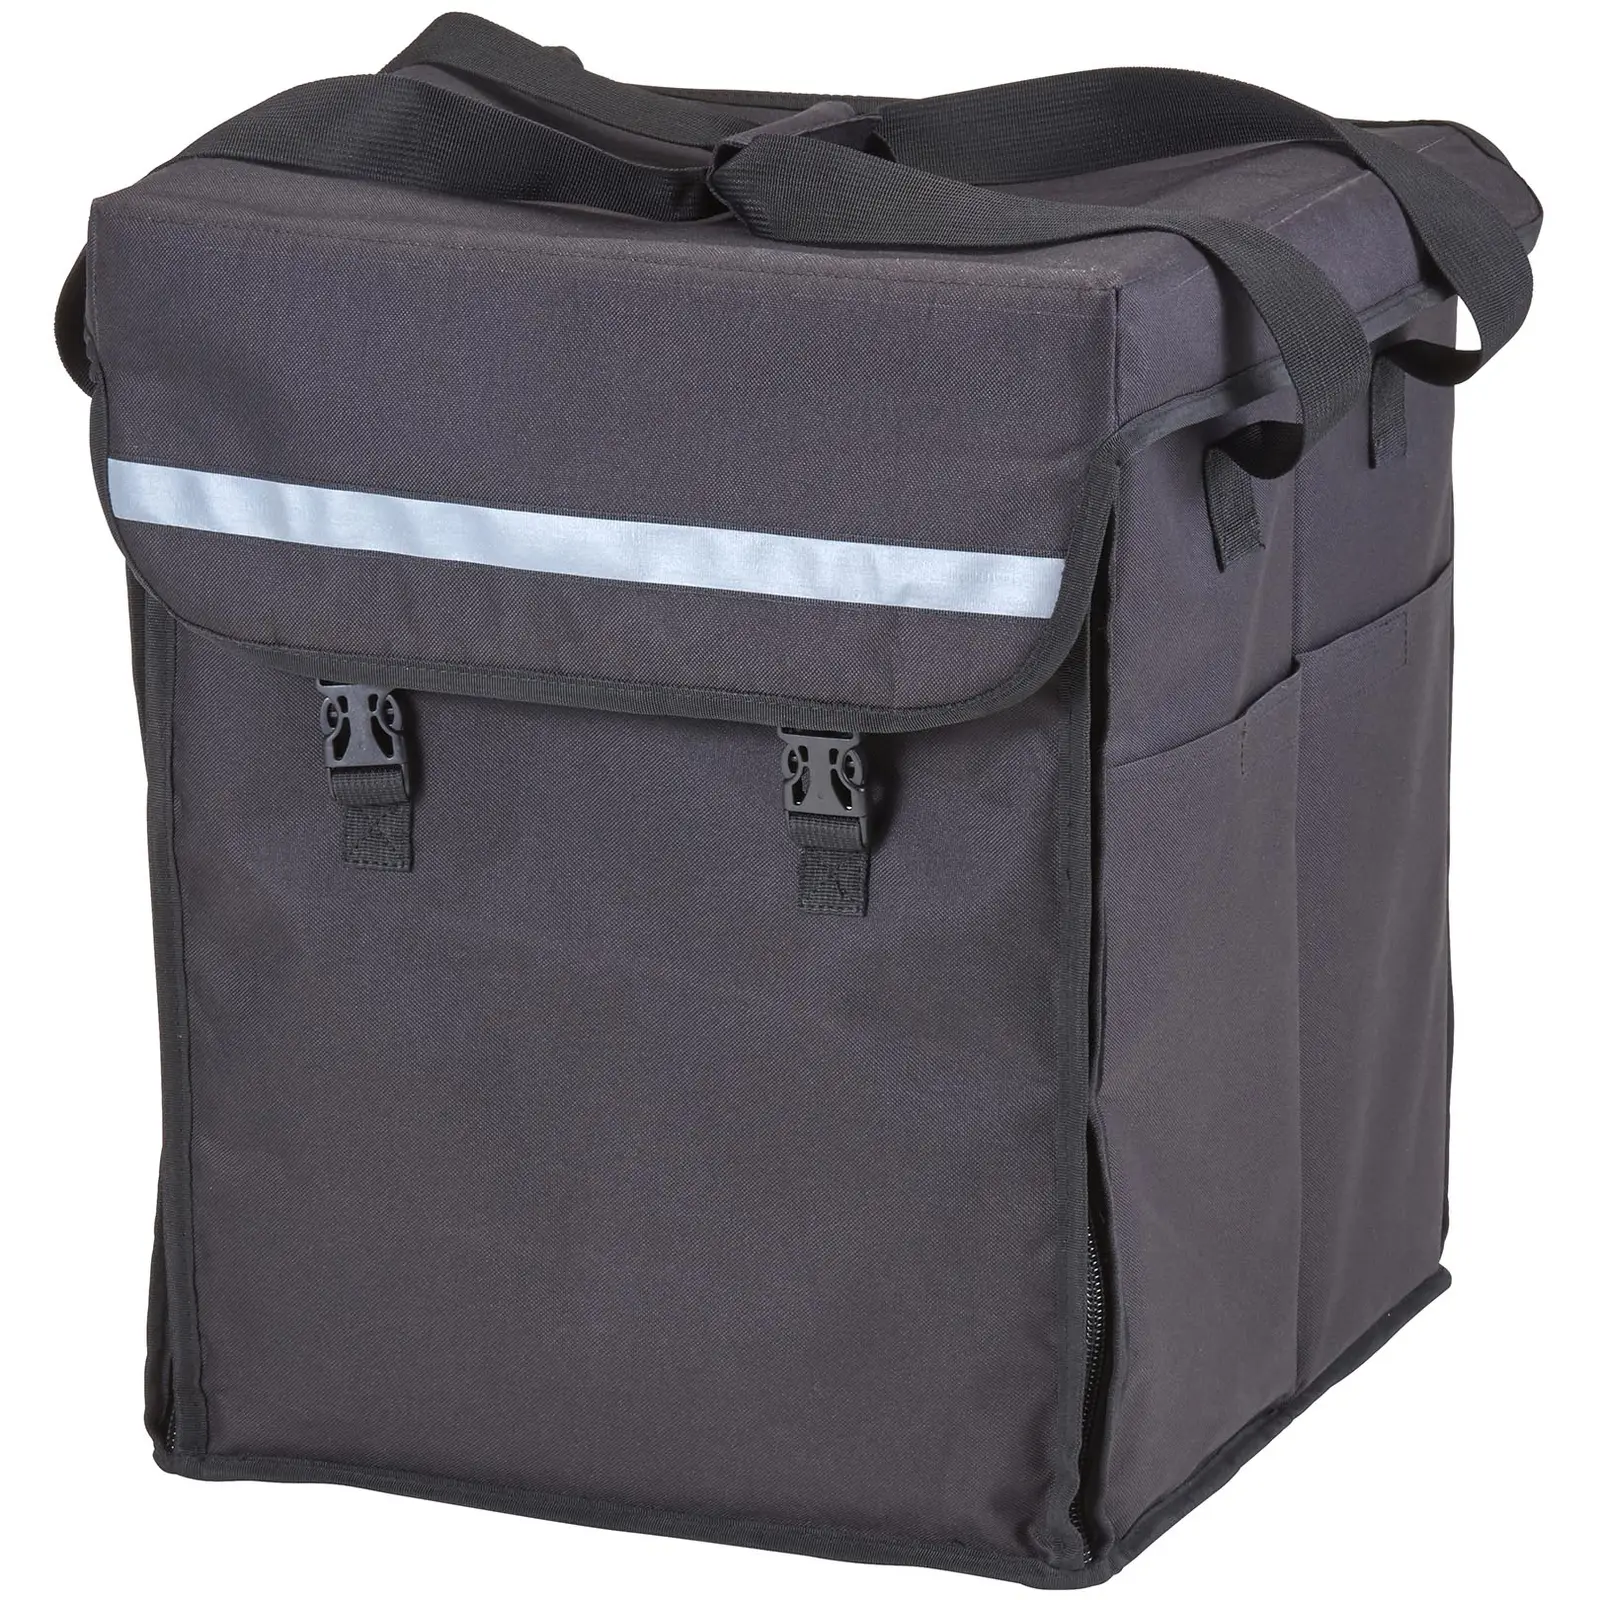 Food Delivery Bag - 38 x 35,5 x 43 cm - Black - backpack